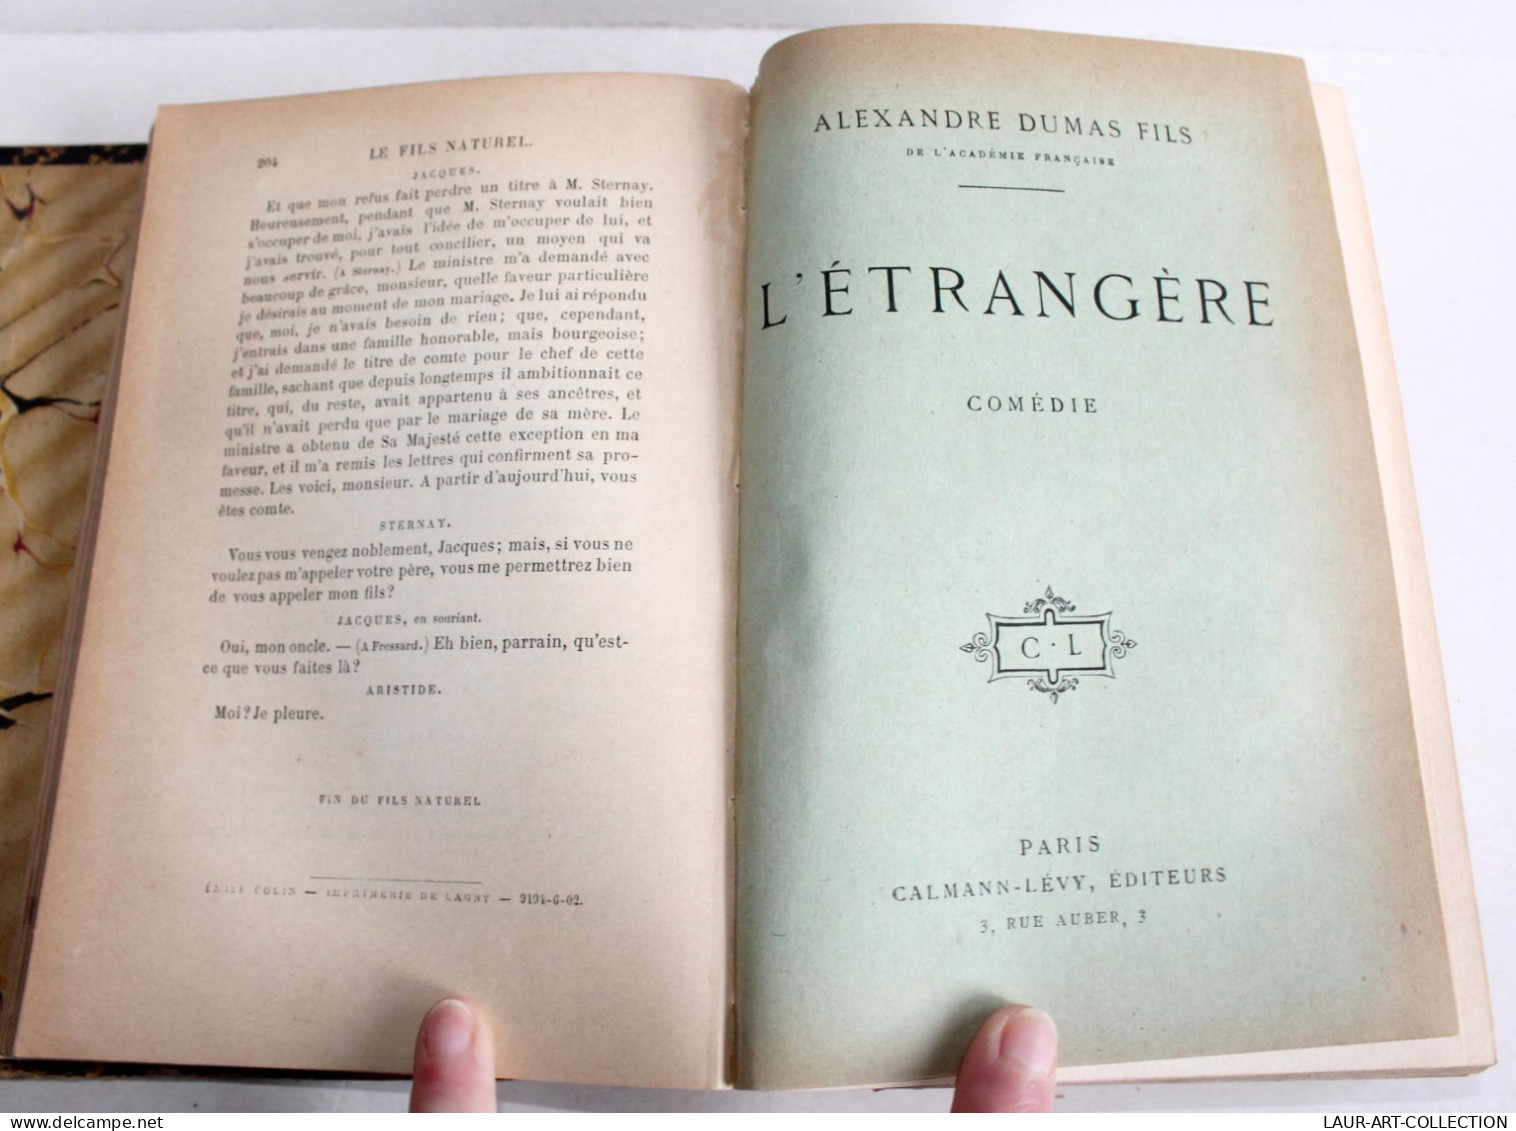 THEATRE RARE 3 COMEDIE XIXe Par DUMAS FILS NATUREL + L'ETRANGERE + PERE PRODIGUE, ANCIEN LIVRE XIXe SIECLE (1803.242) - French Authors